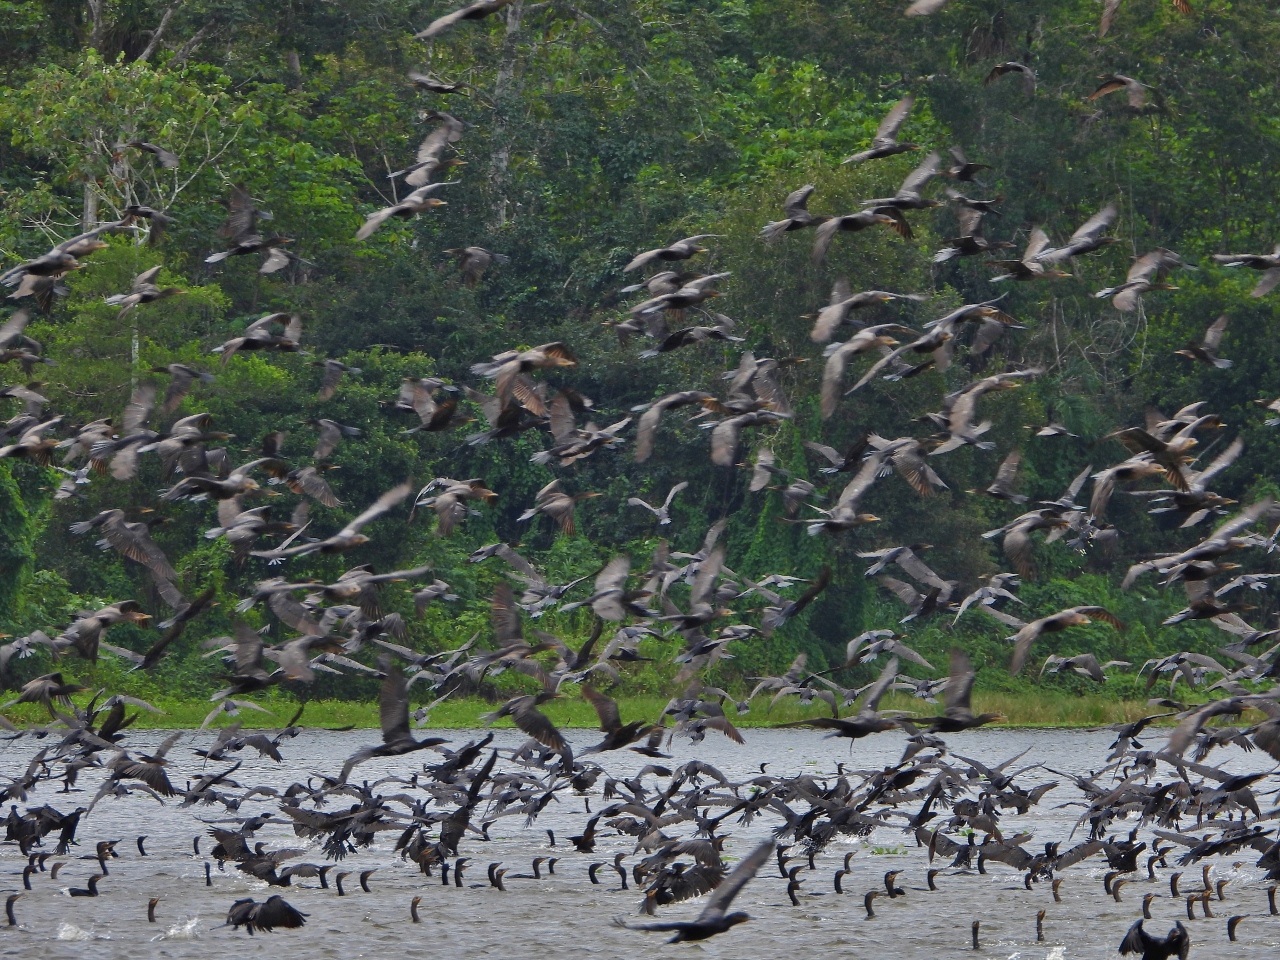 Cormorants, Amazon River